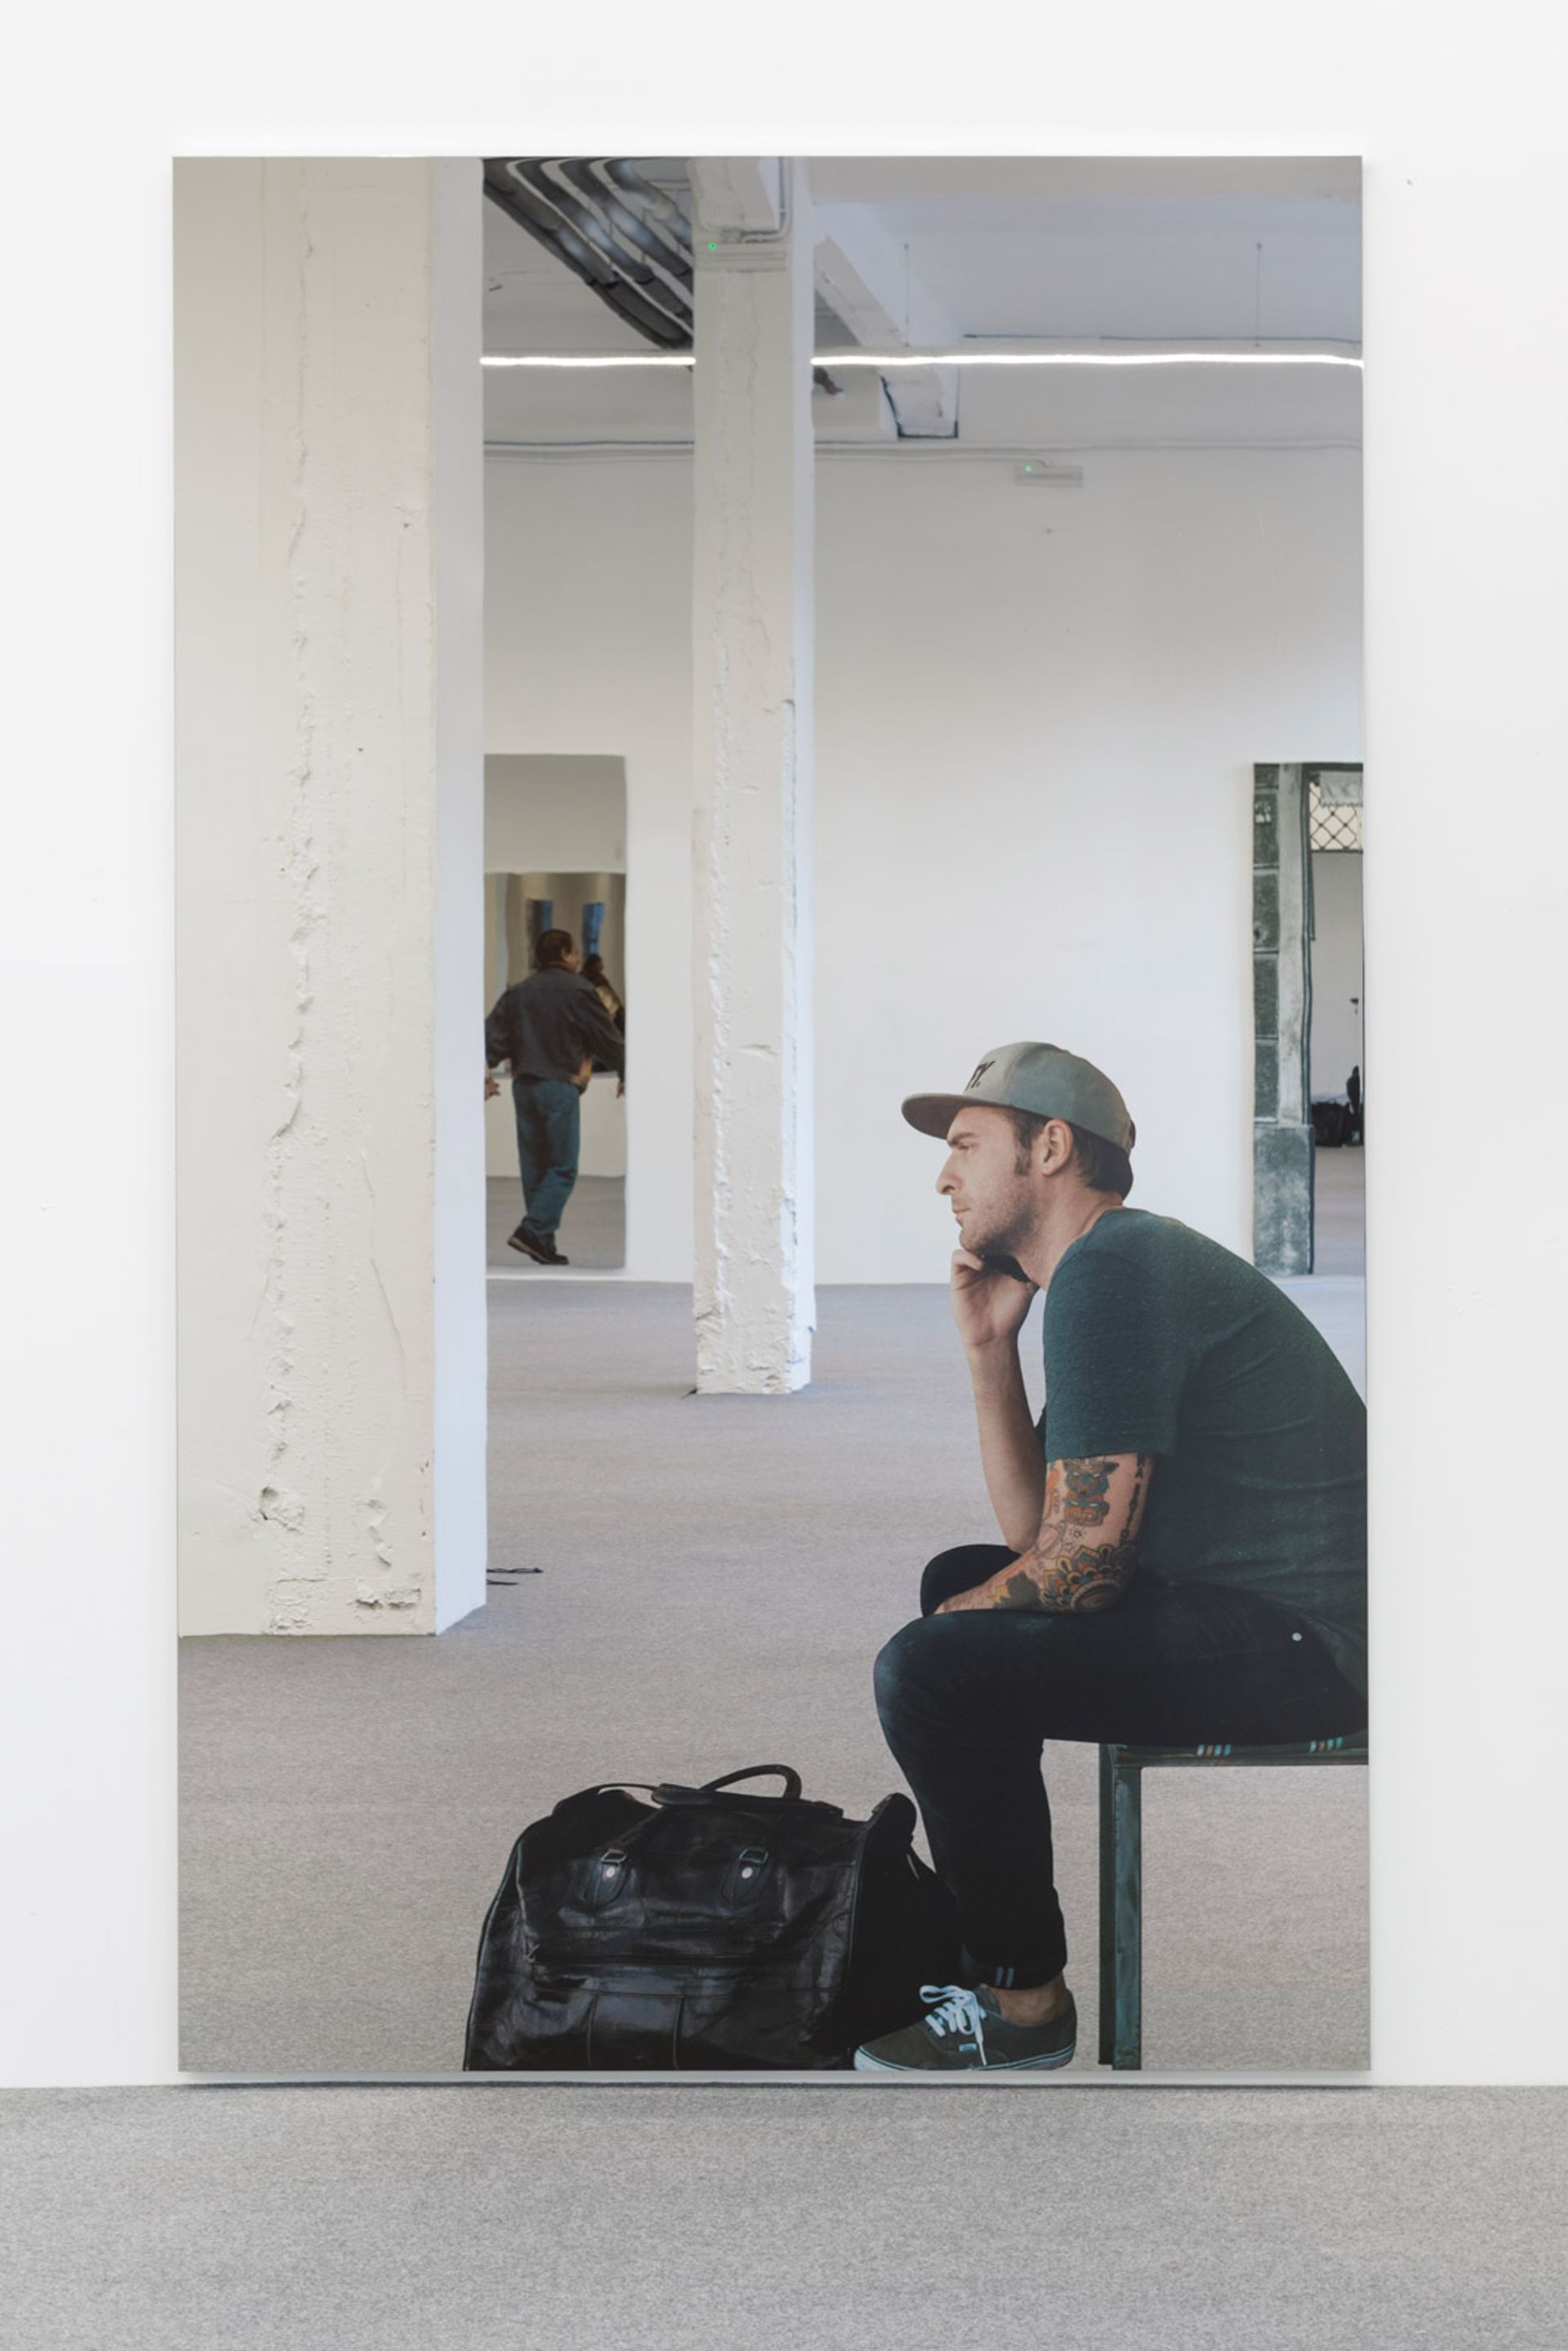 Michelangelo Pistoletto’s Smartphone – uomo seduto che telefona (2018) Giorgio Persano Gallery